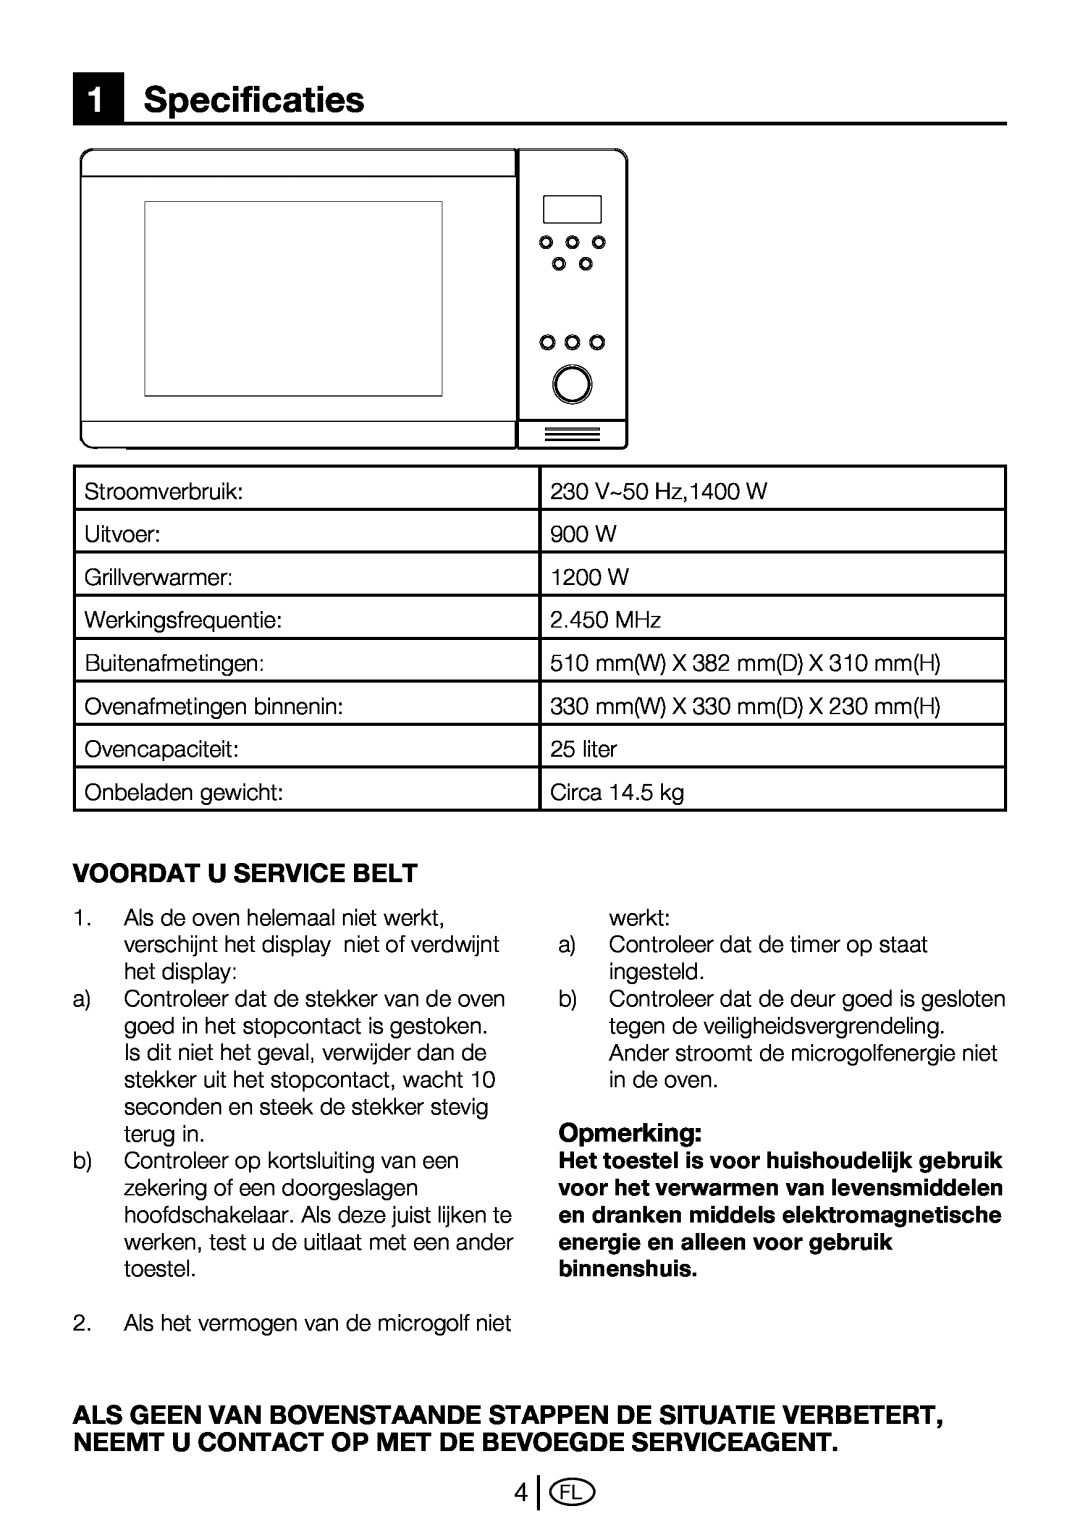 Beko MWB 2510 EX instruction manual 1Specificaties, Voordat U Service Belt, Opmerking 